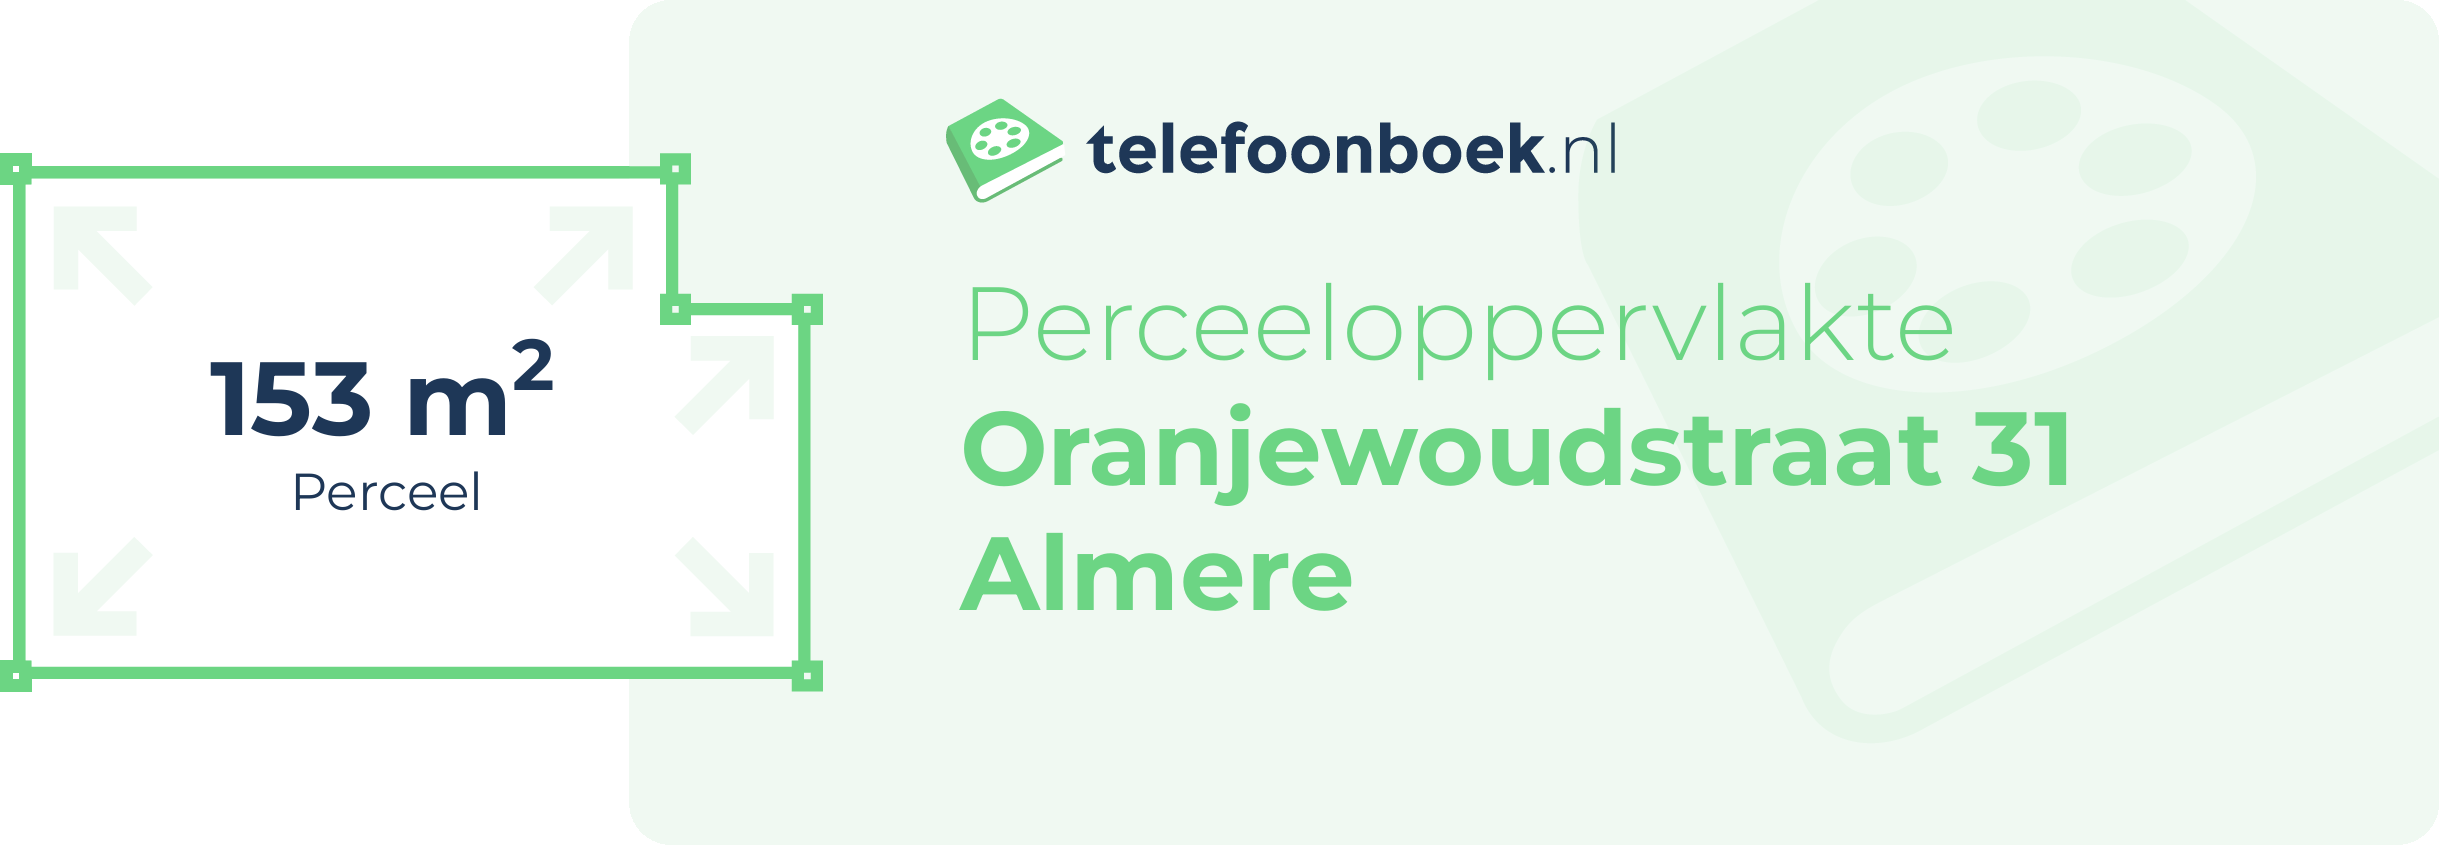 Perceeloppervlakte Oranjewoudstraat 31 Almere